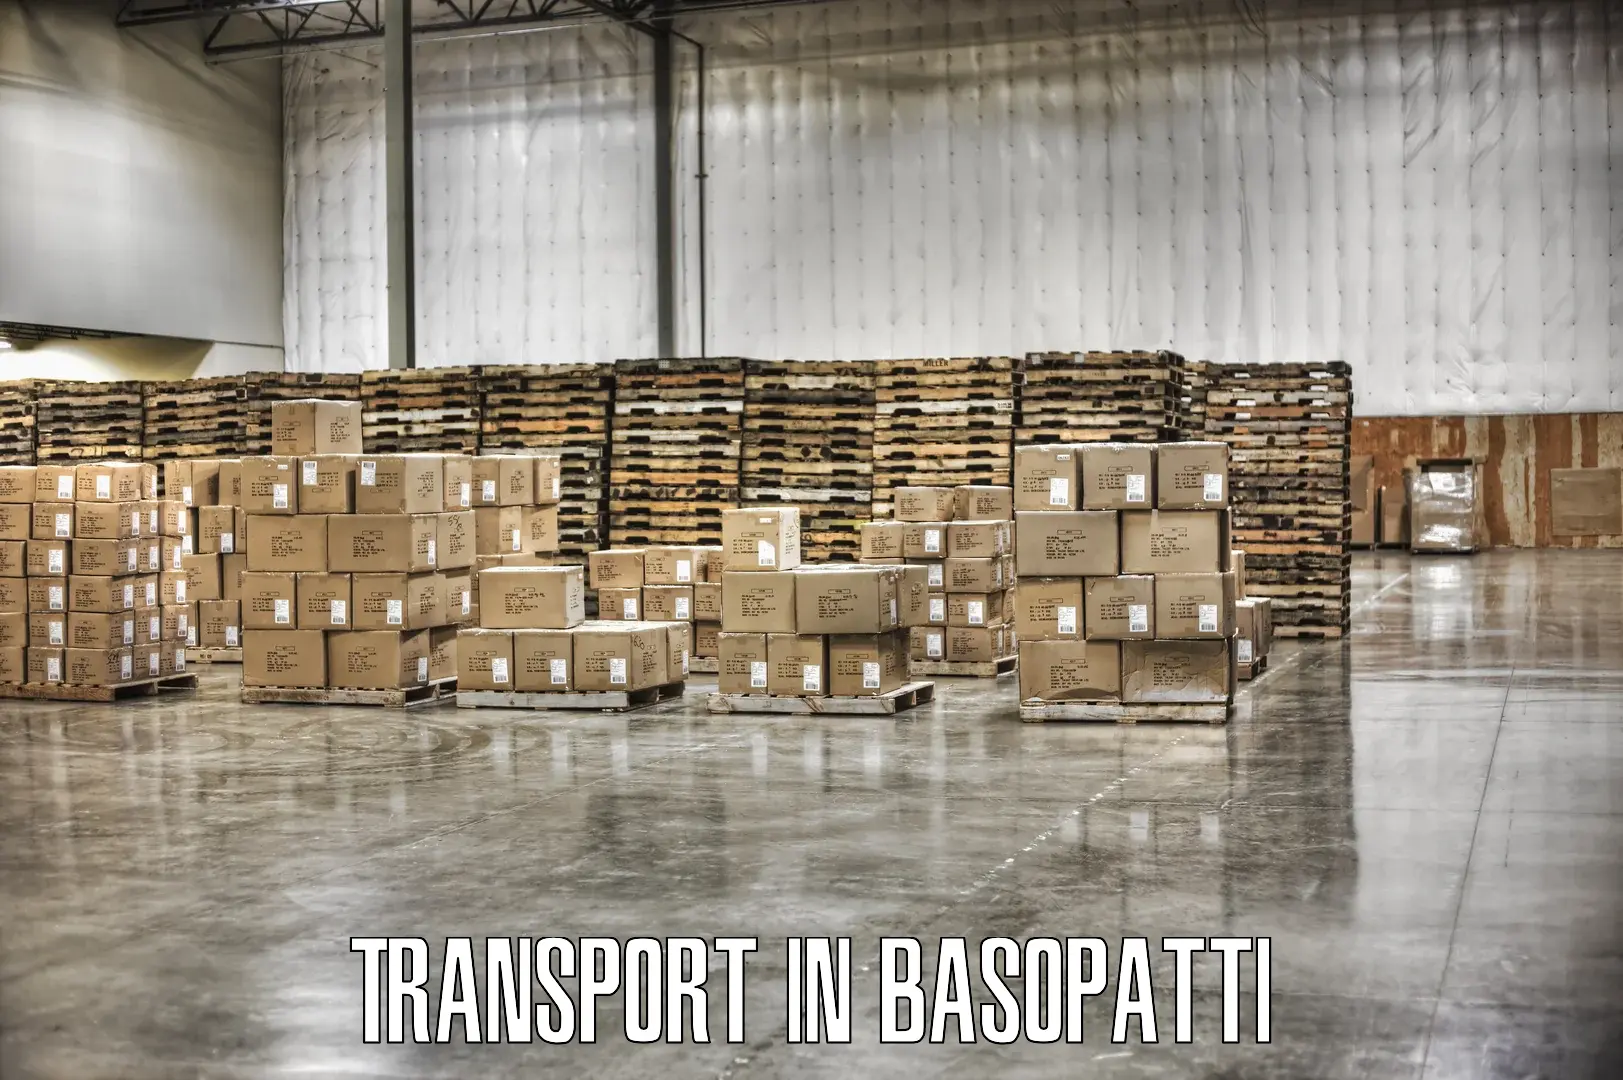 Nearby transport service in Basopatti